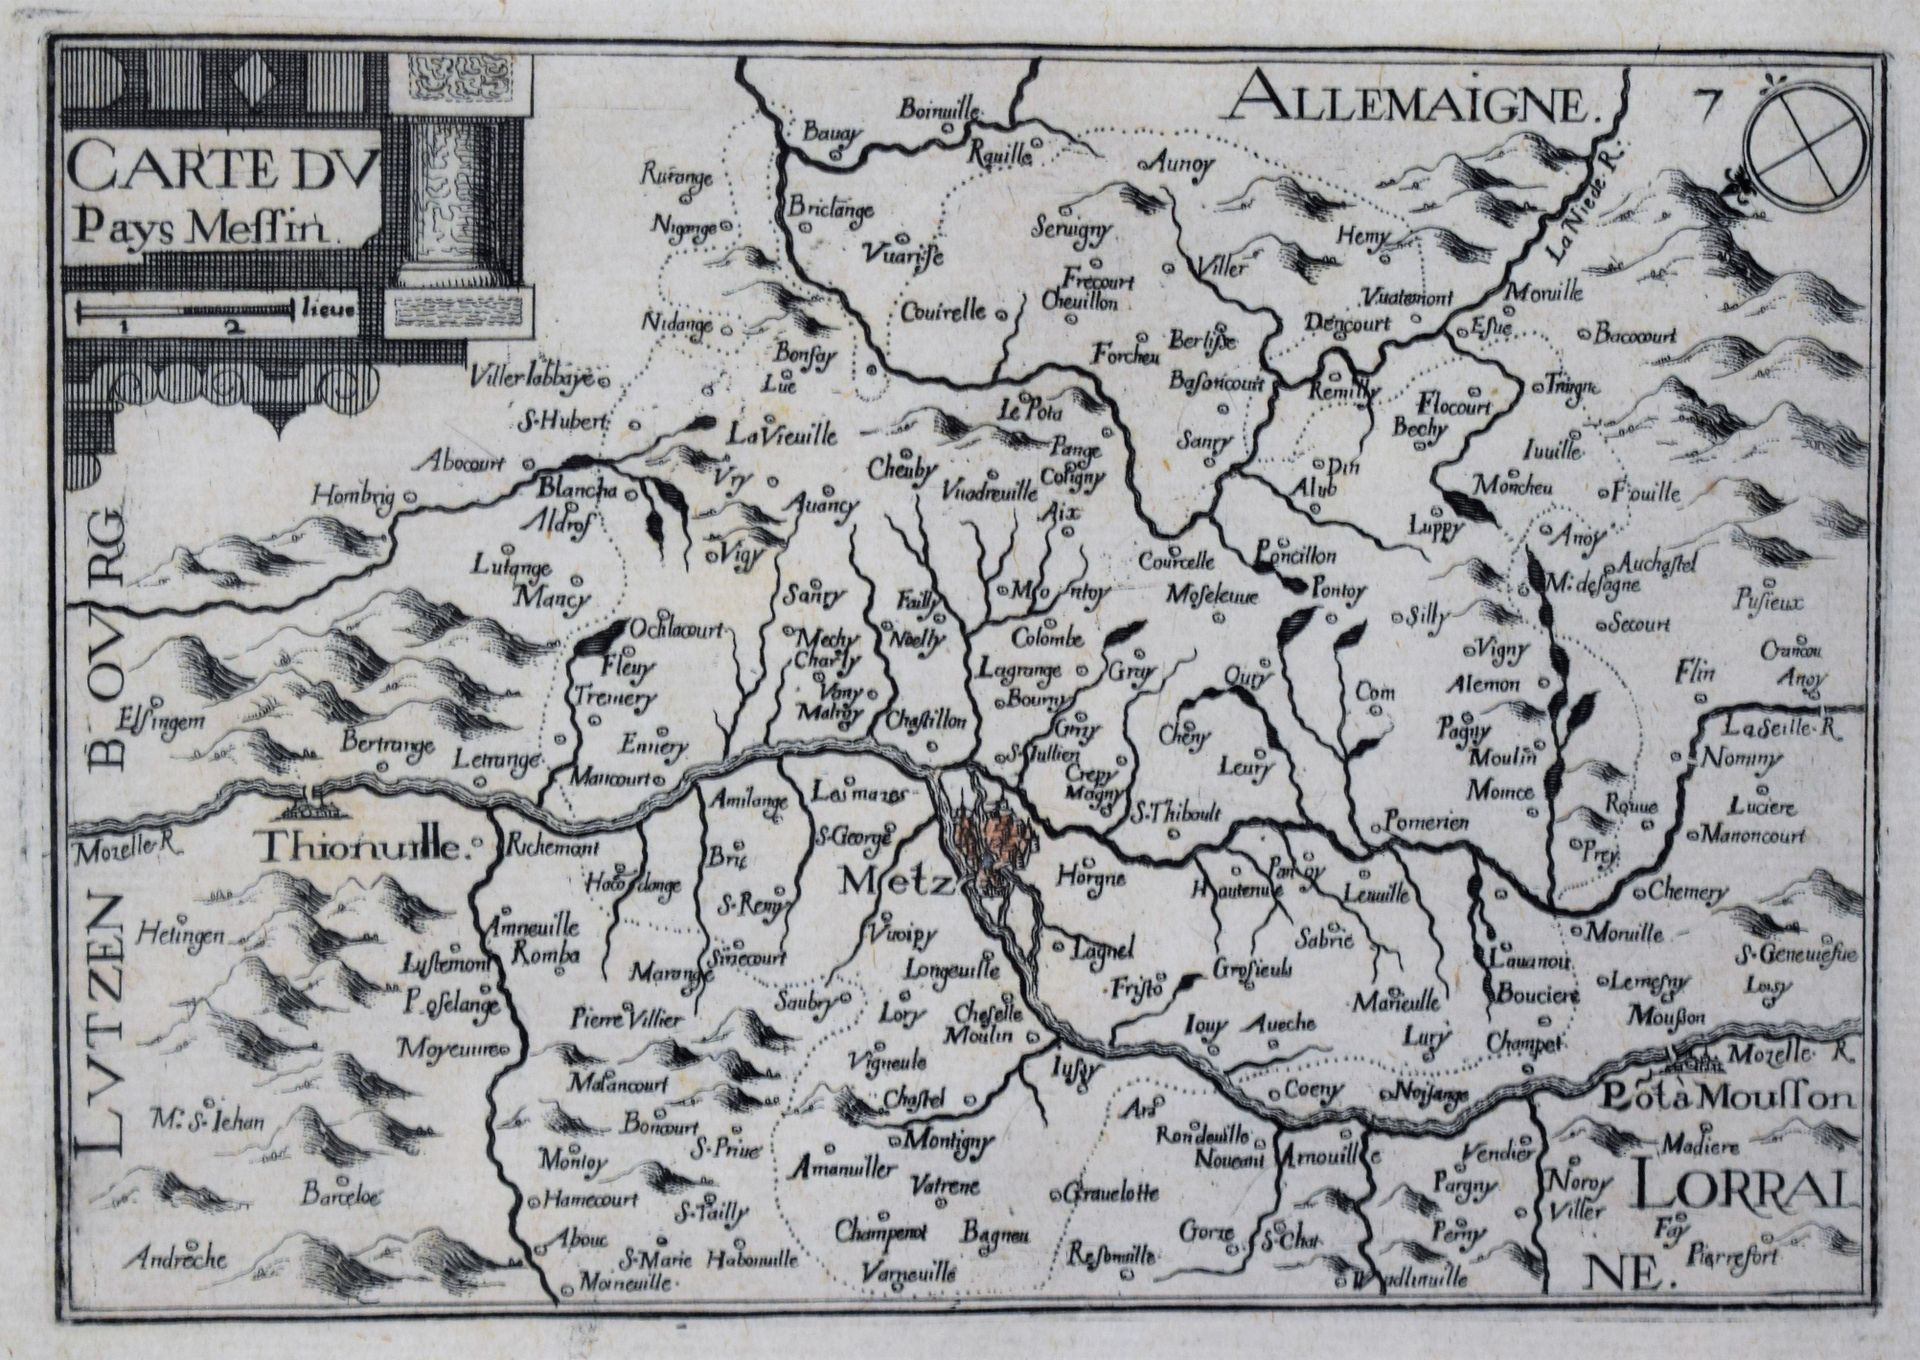 Null CARTE ancienne "Carte du Pays Messin", XVIIe siècle, 17 x 21 cm (à vue)

|
&hellip;